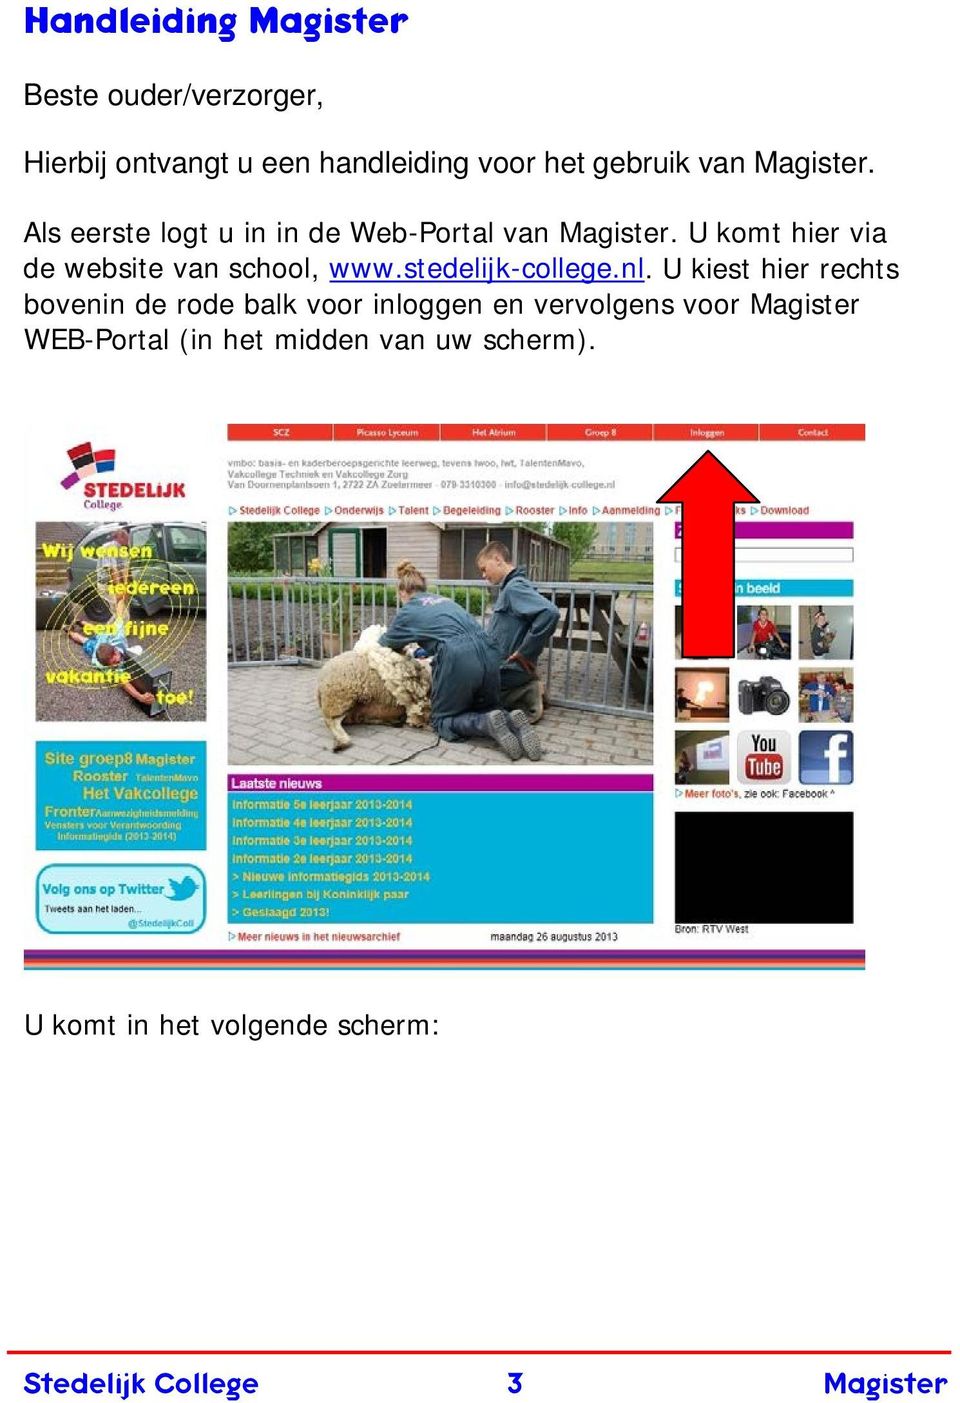 U komt hier via de website van school, www.stedelijk-college.nl.